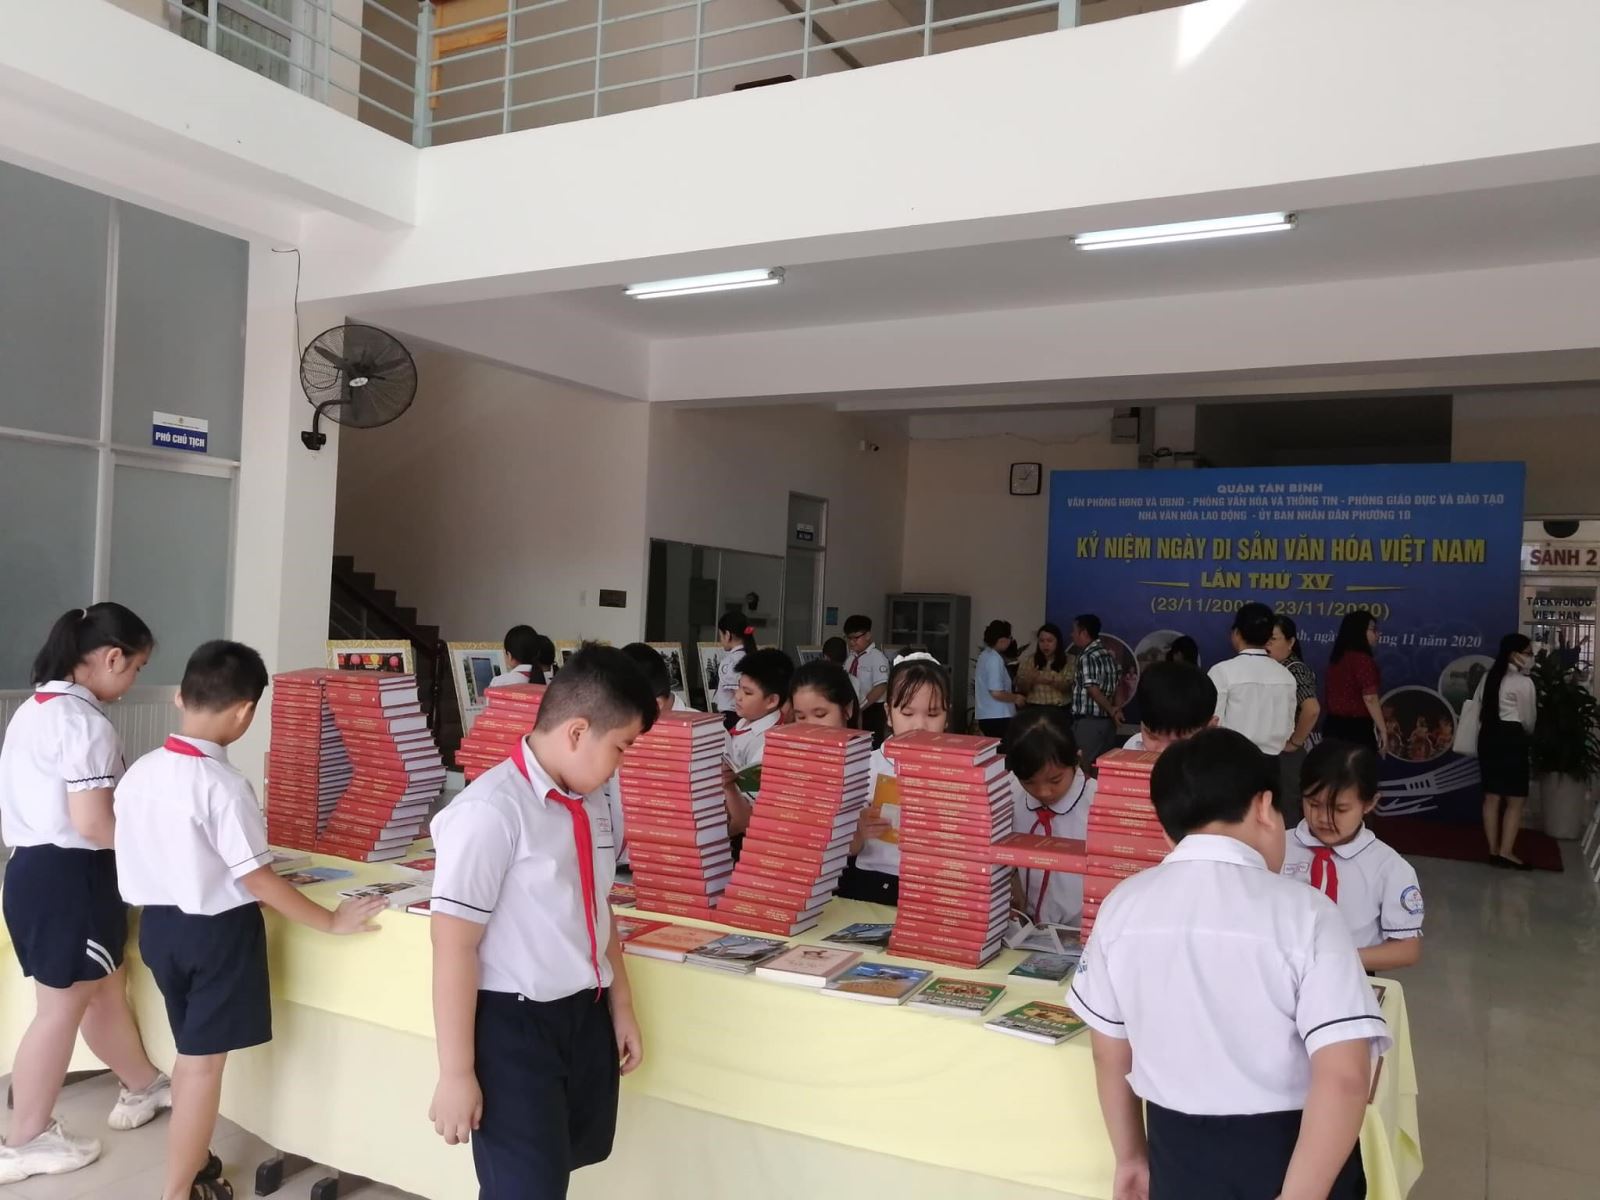 Tổ chức trưng bày, Triển lãm Sách và Ảnh kỷ niệm Ngày Di sản Văn hoá Việt Nam lần thứ XV